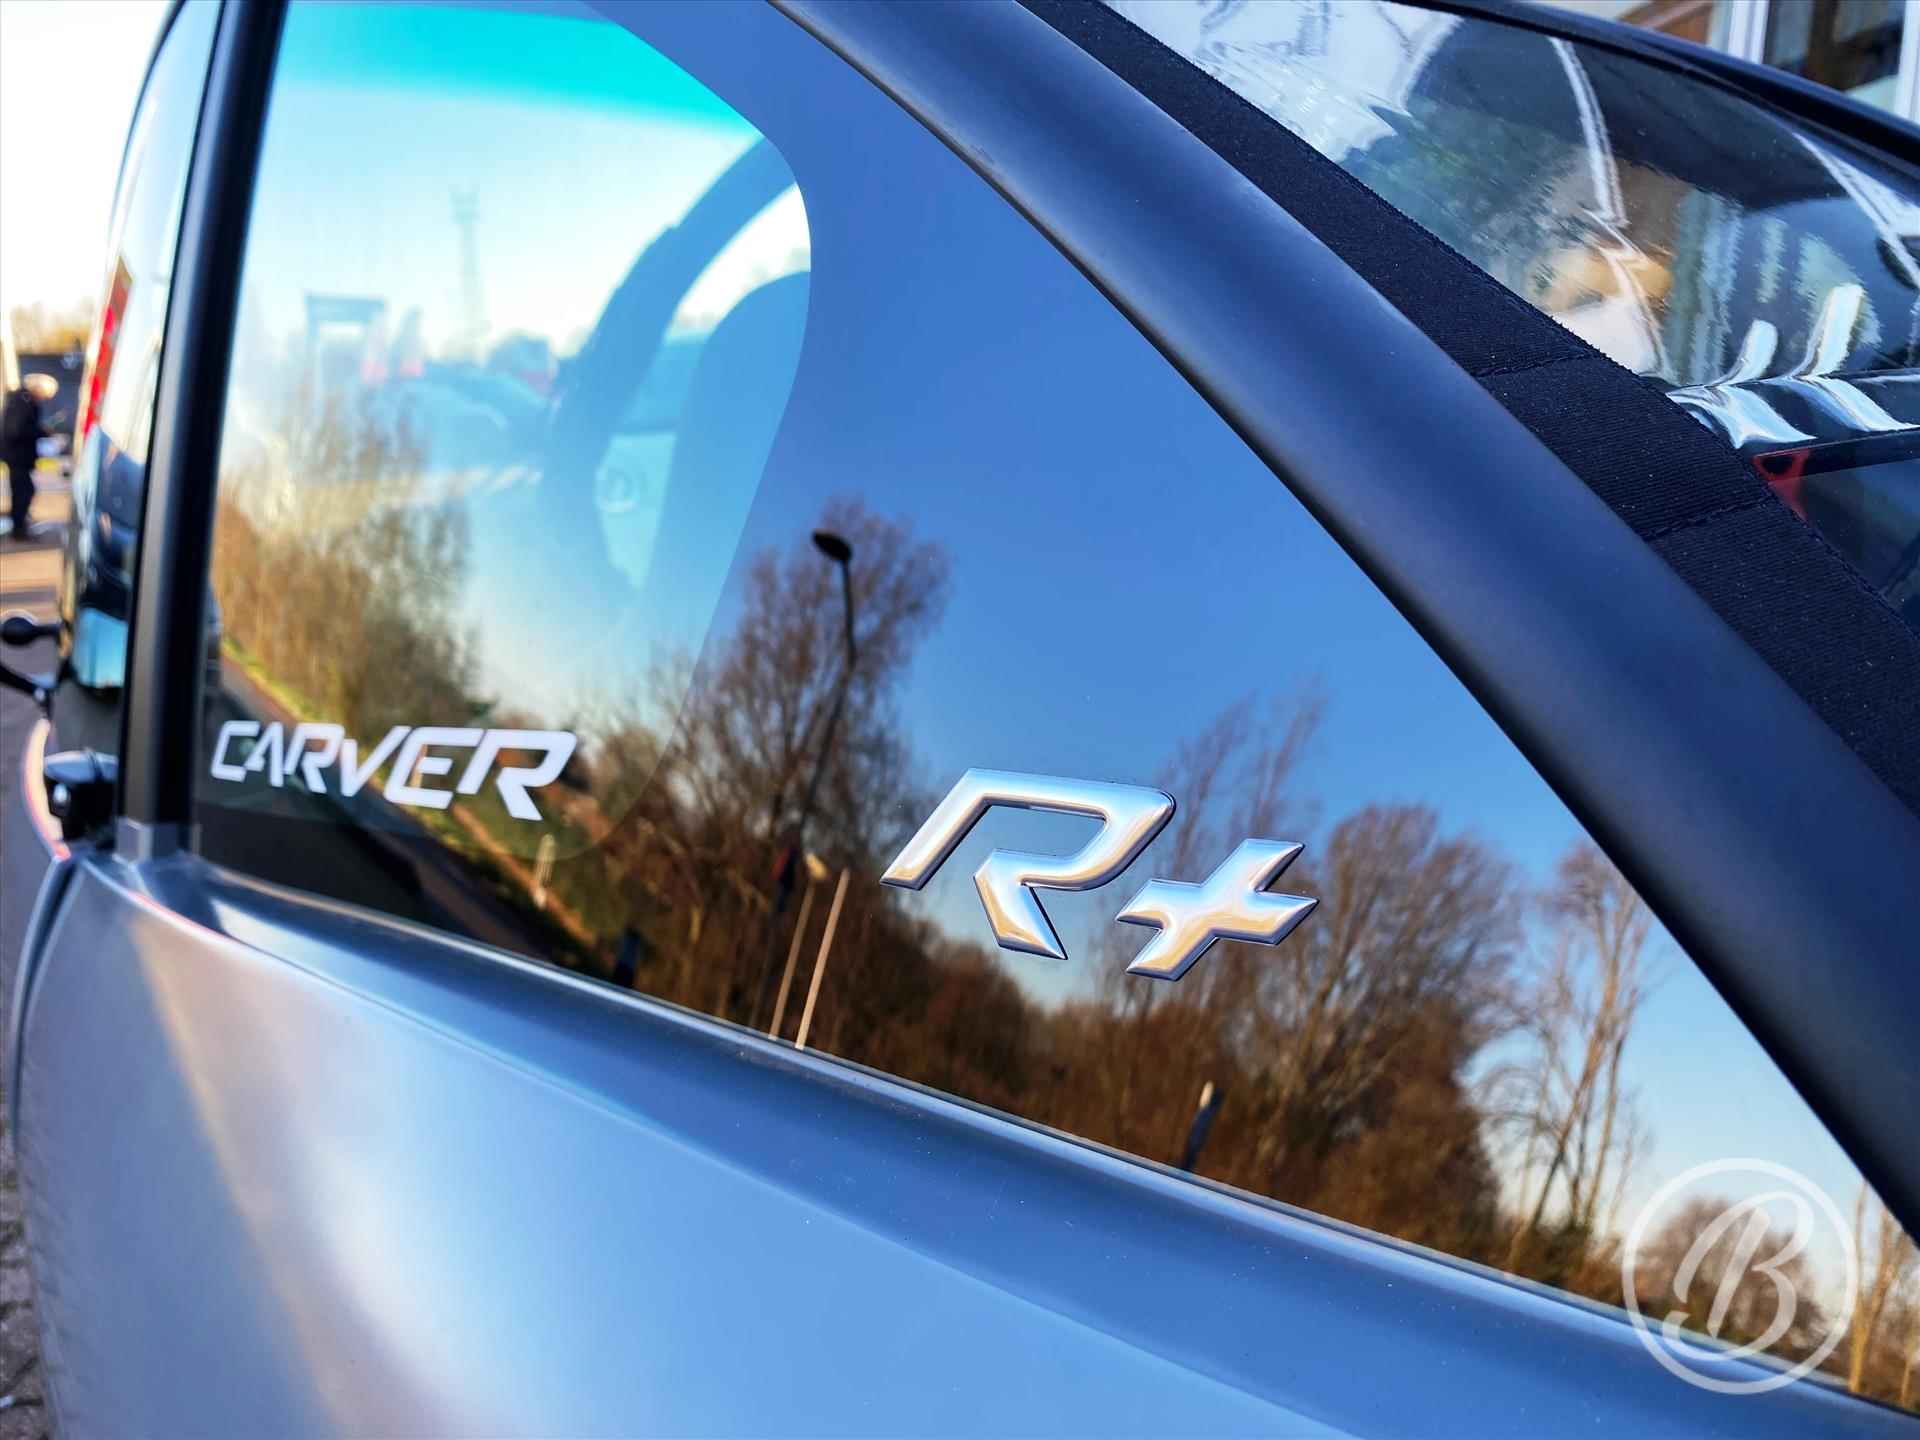 CARVER Carver Range+ 45 km/u 7,1 kWh *nieuw* | SPRING CLEANING SALE gratis accessoirepakket, direct leverbaar! - 19/40